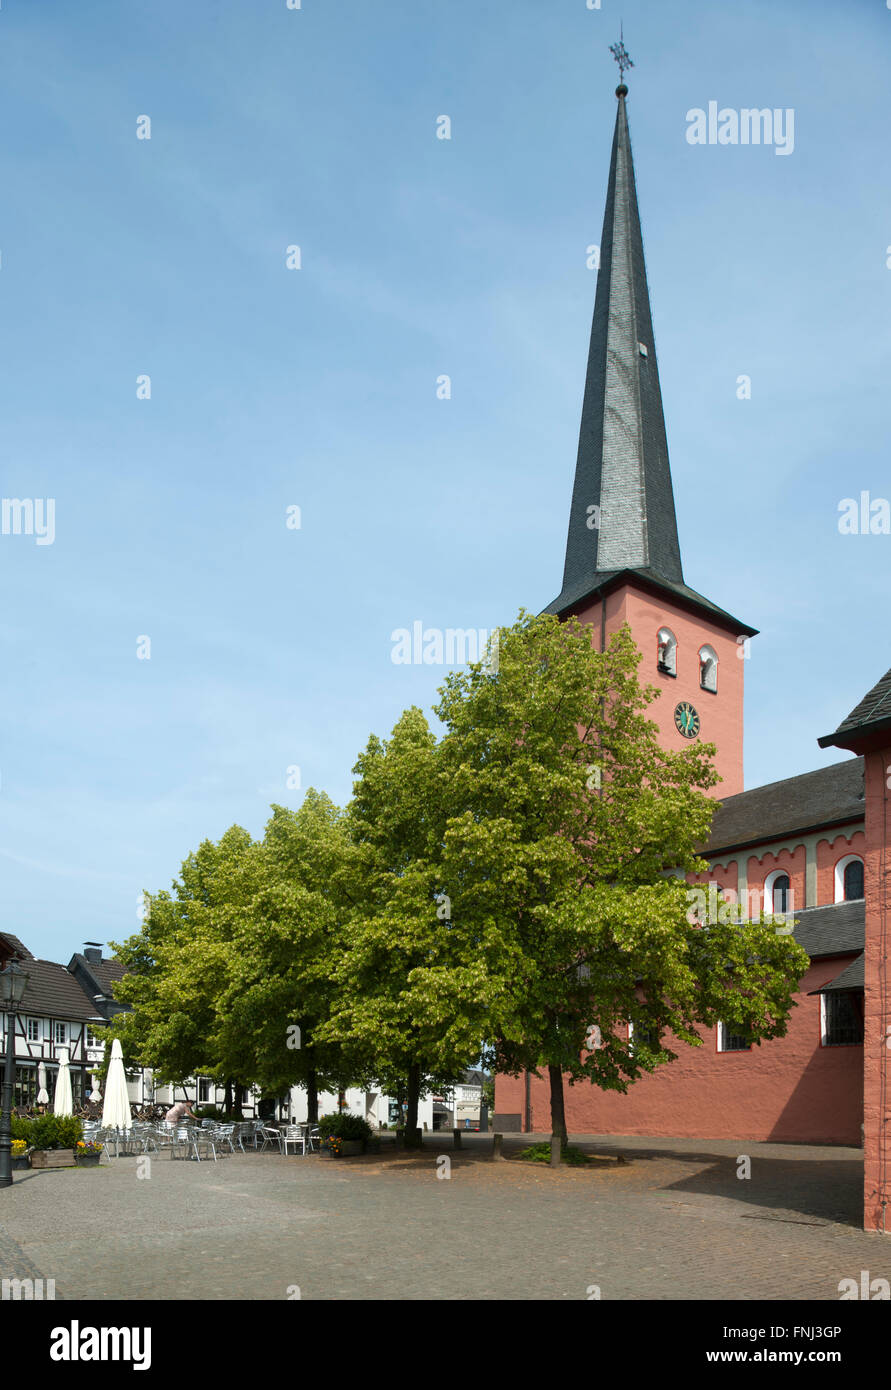 Deutschland, Renania settentrionale-Vestfalia, Rhein-Sieg-Kreis, molto, katholische Kirche Sankt Martinus Foto Stock